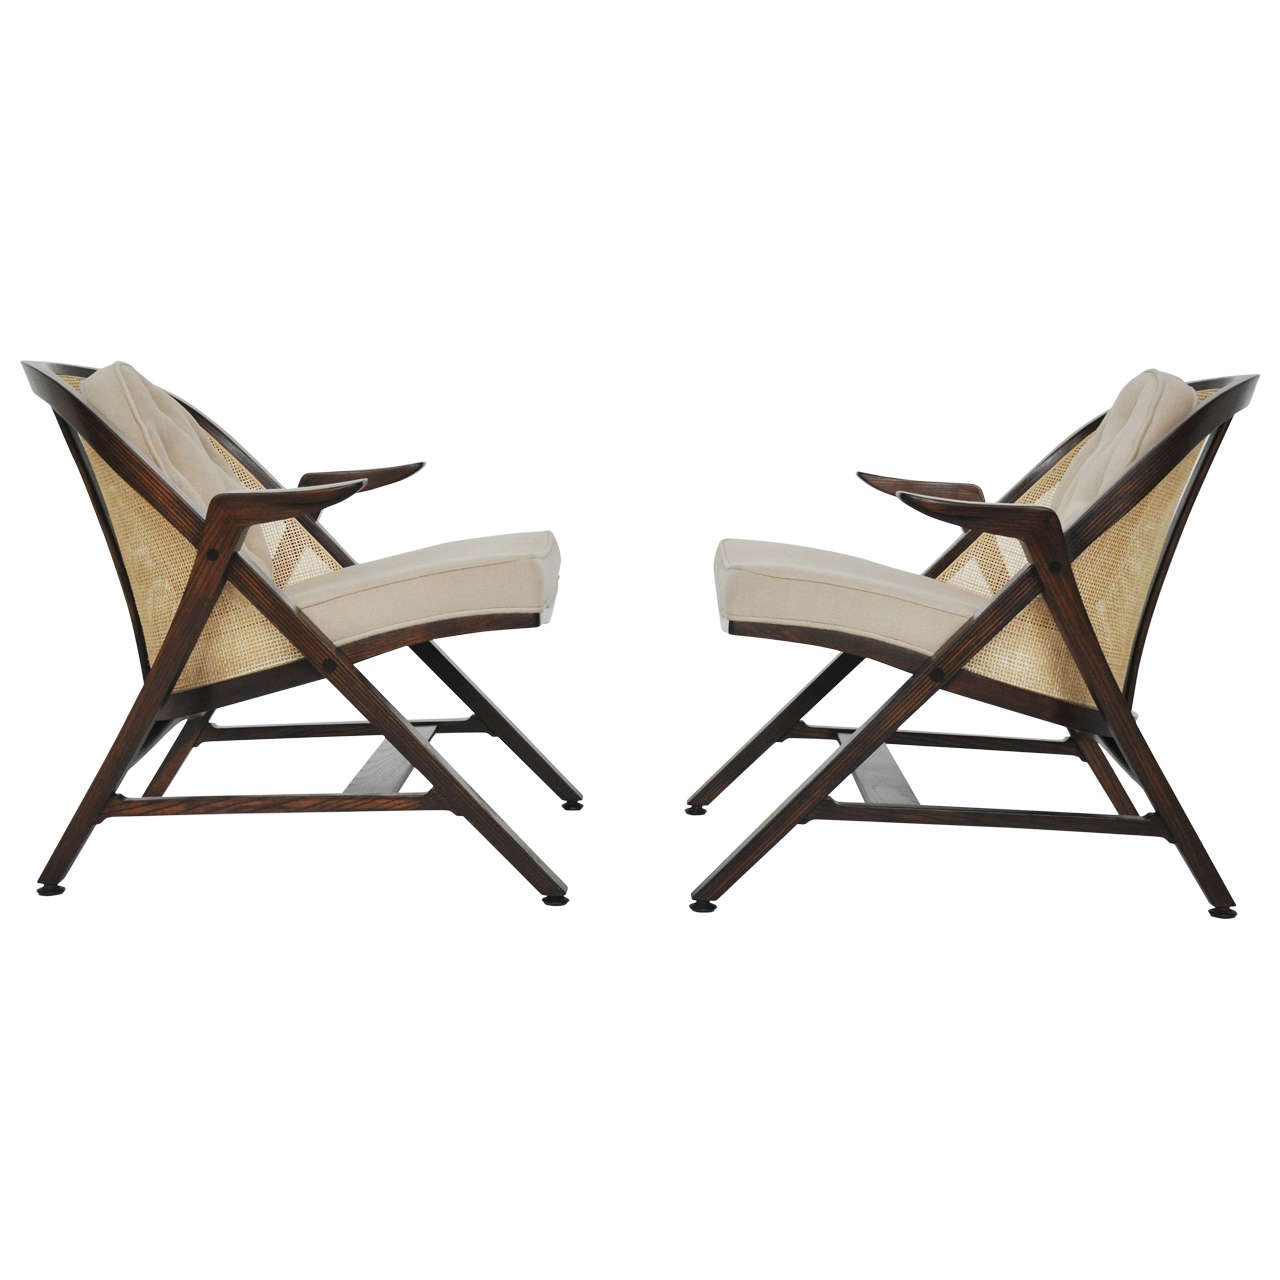 Dunbar A-Frame Chairs by Edward Wormley